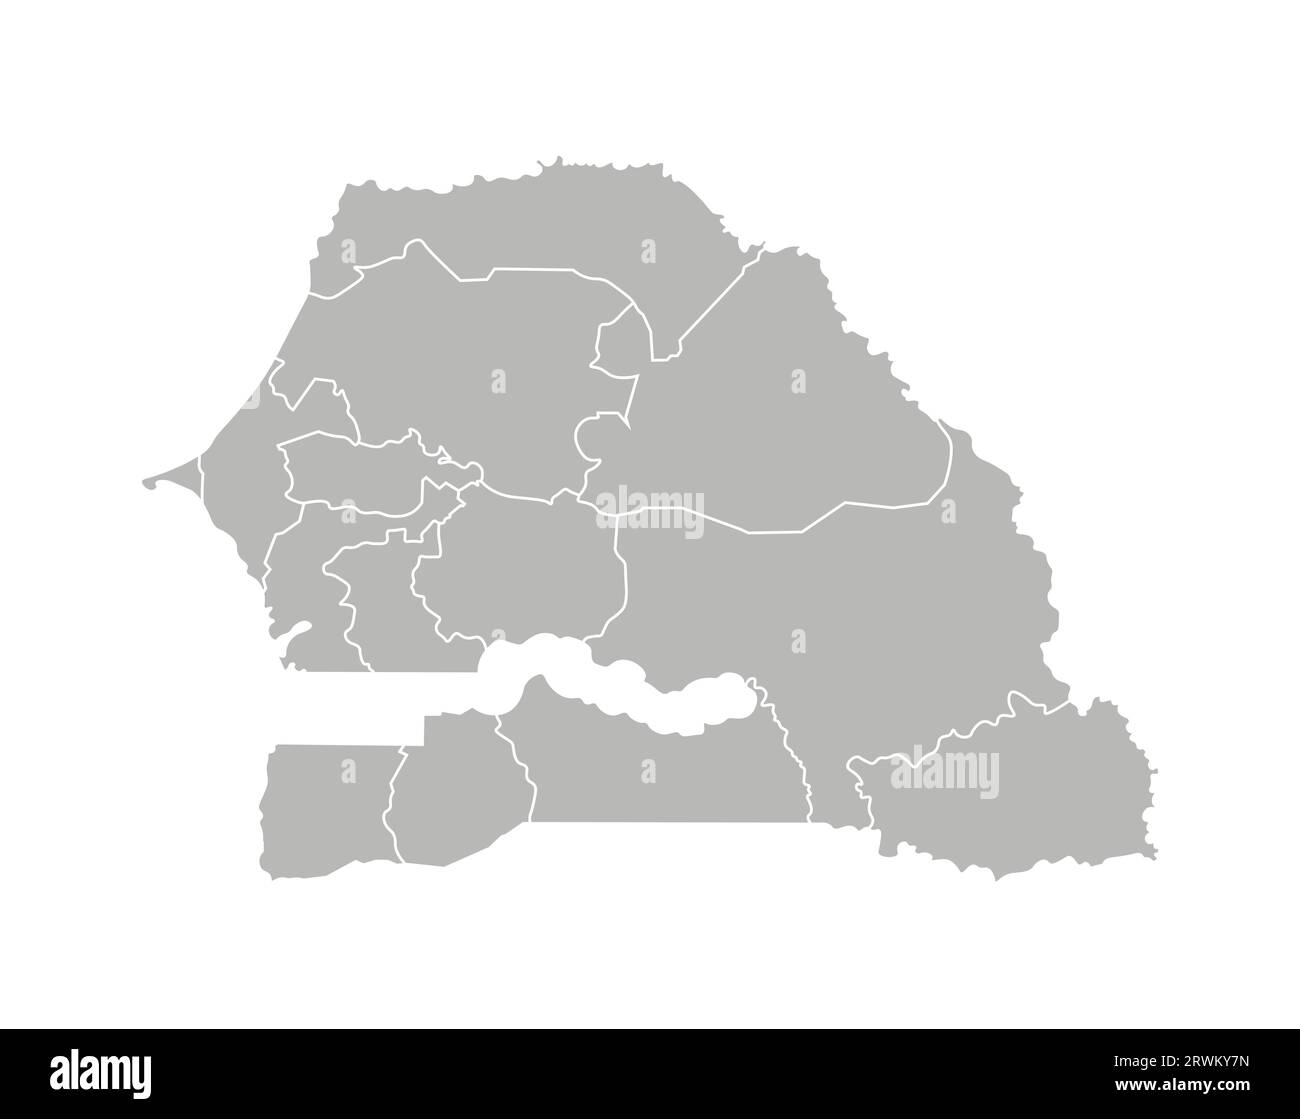 Illustration vectorielle isolée d'une carte administrative simplifiée du Sénégal. Frontières des régions. Silhouettes grises. Contour blanc. Illustration de Vecteur